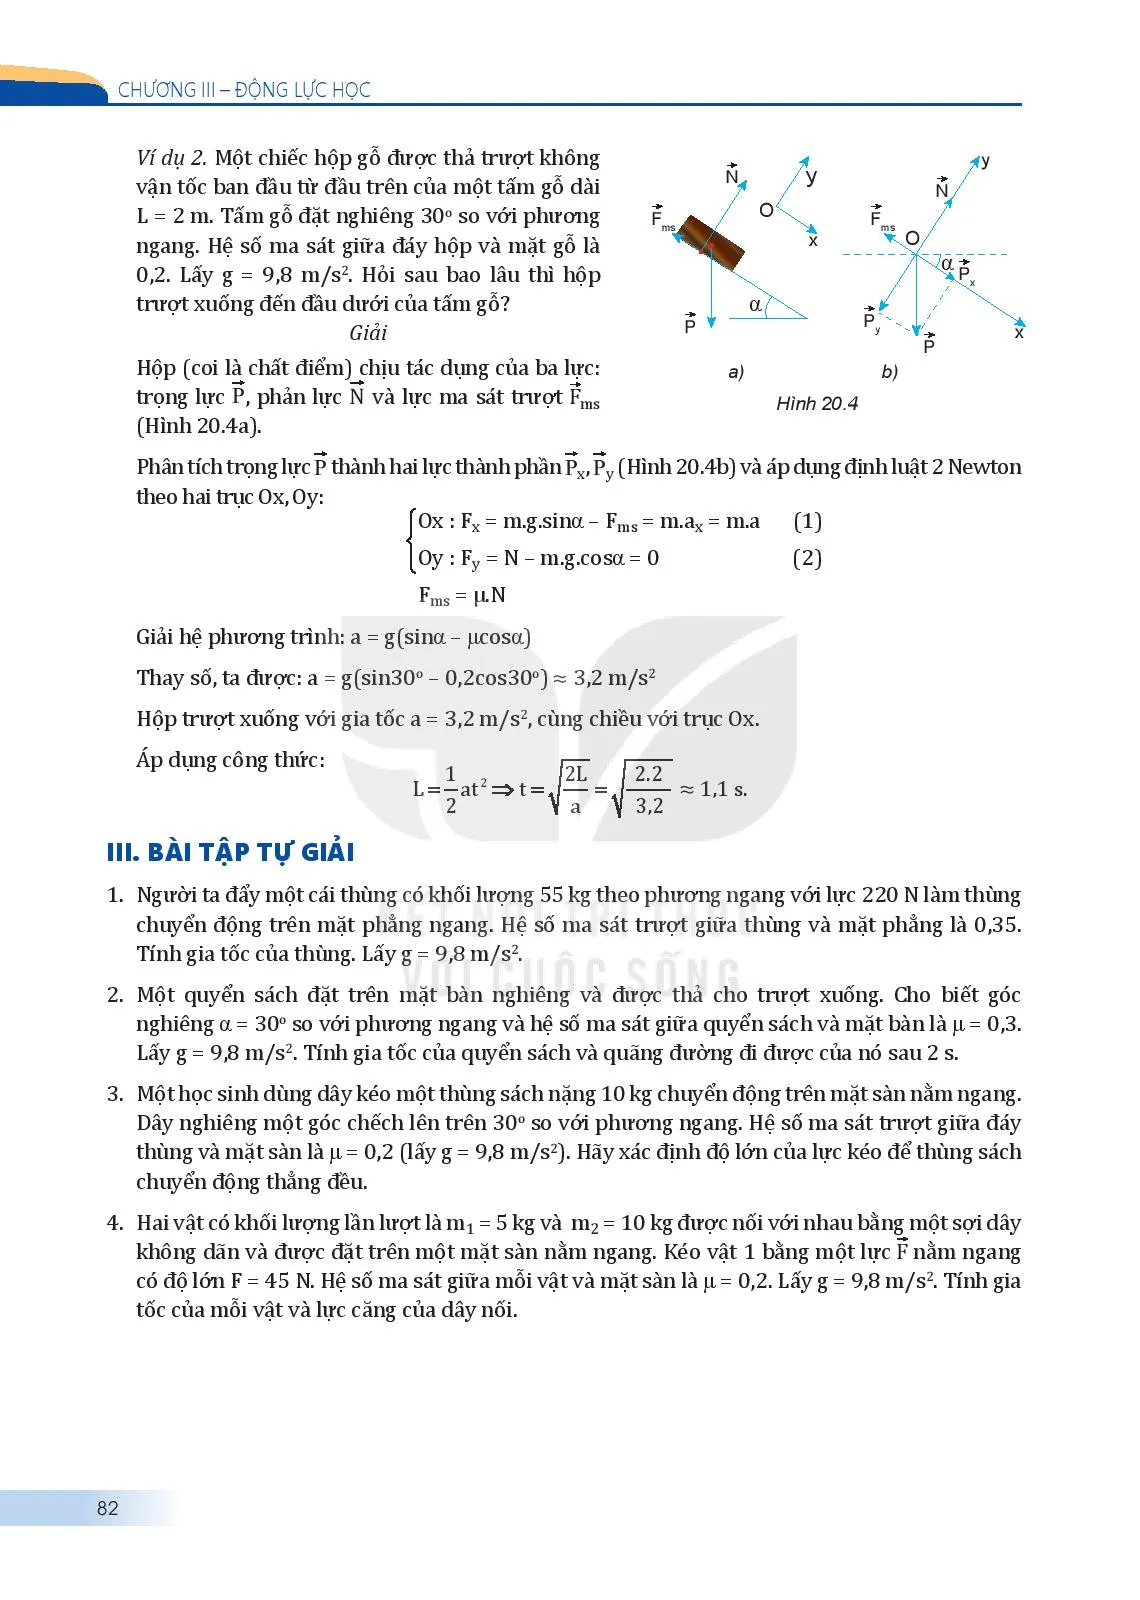 Bài 20. Một số ví dụ về cách giải các bài toán thuộc phần động lực học